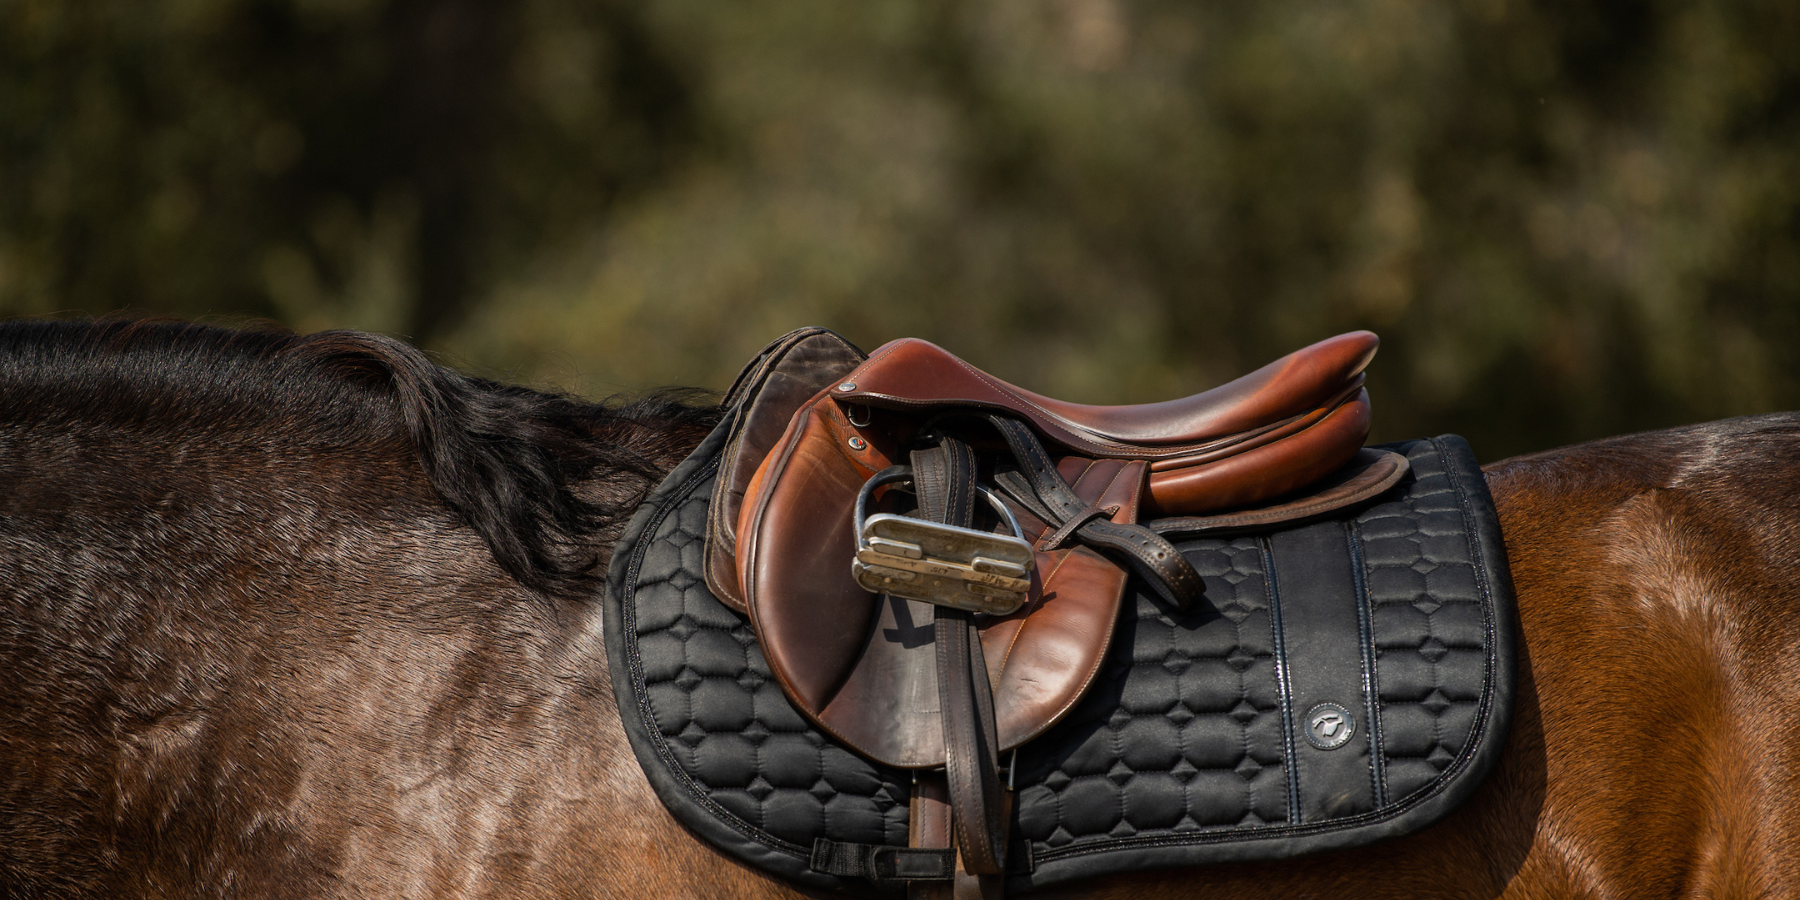 Butet saddle and saddle pad on horse